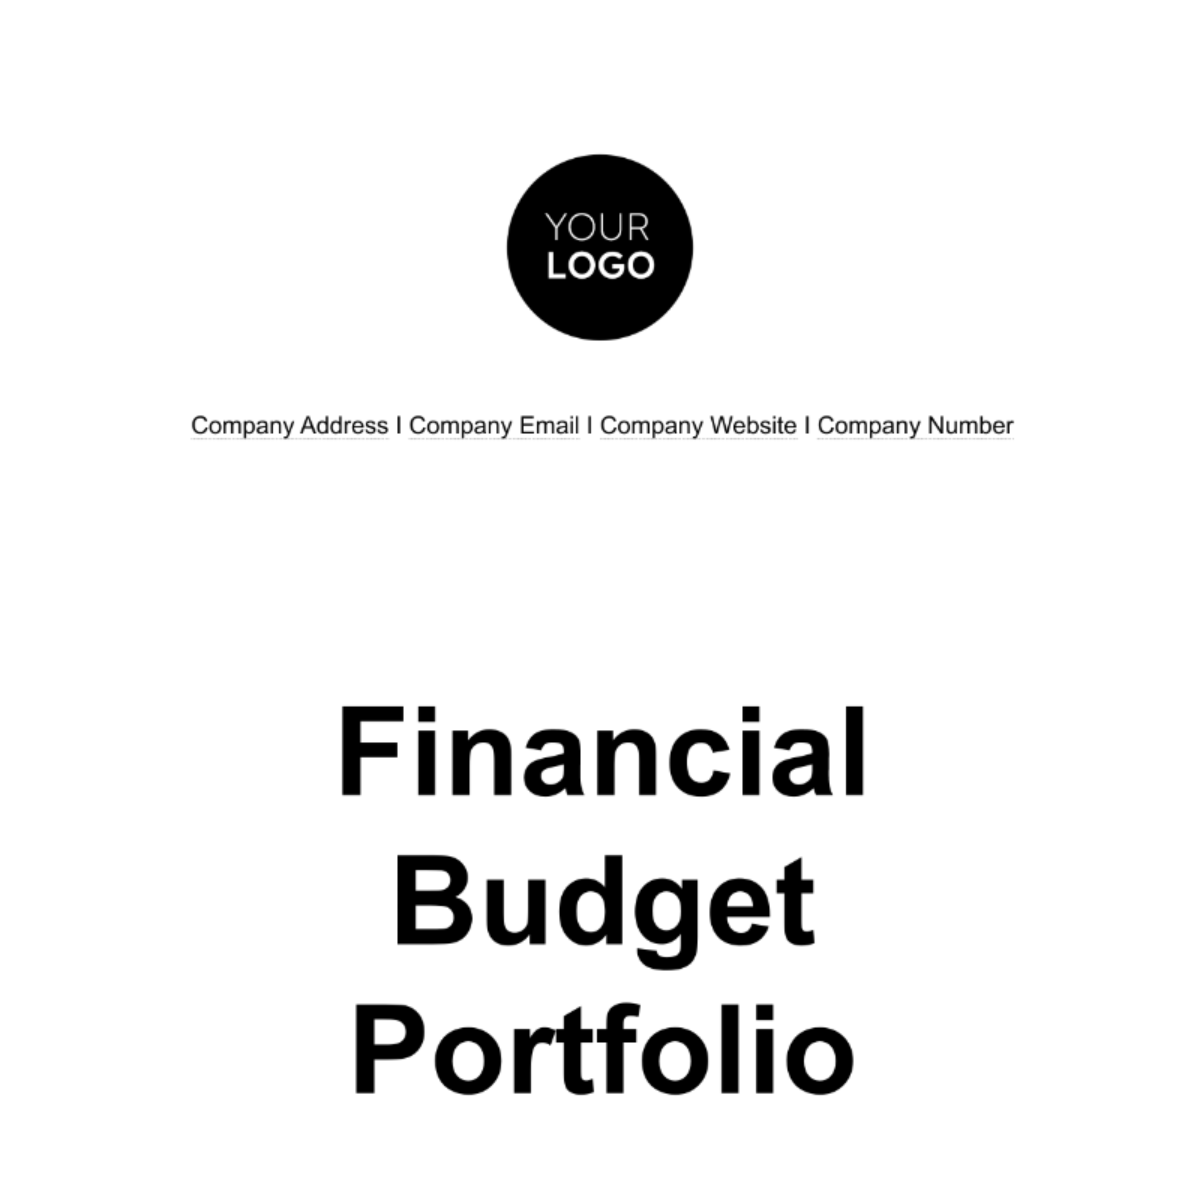 Financial Budget Portfolio Template